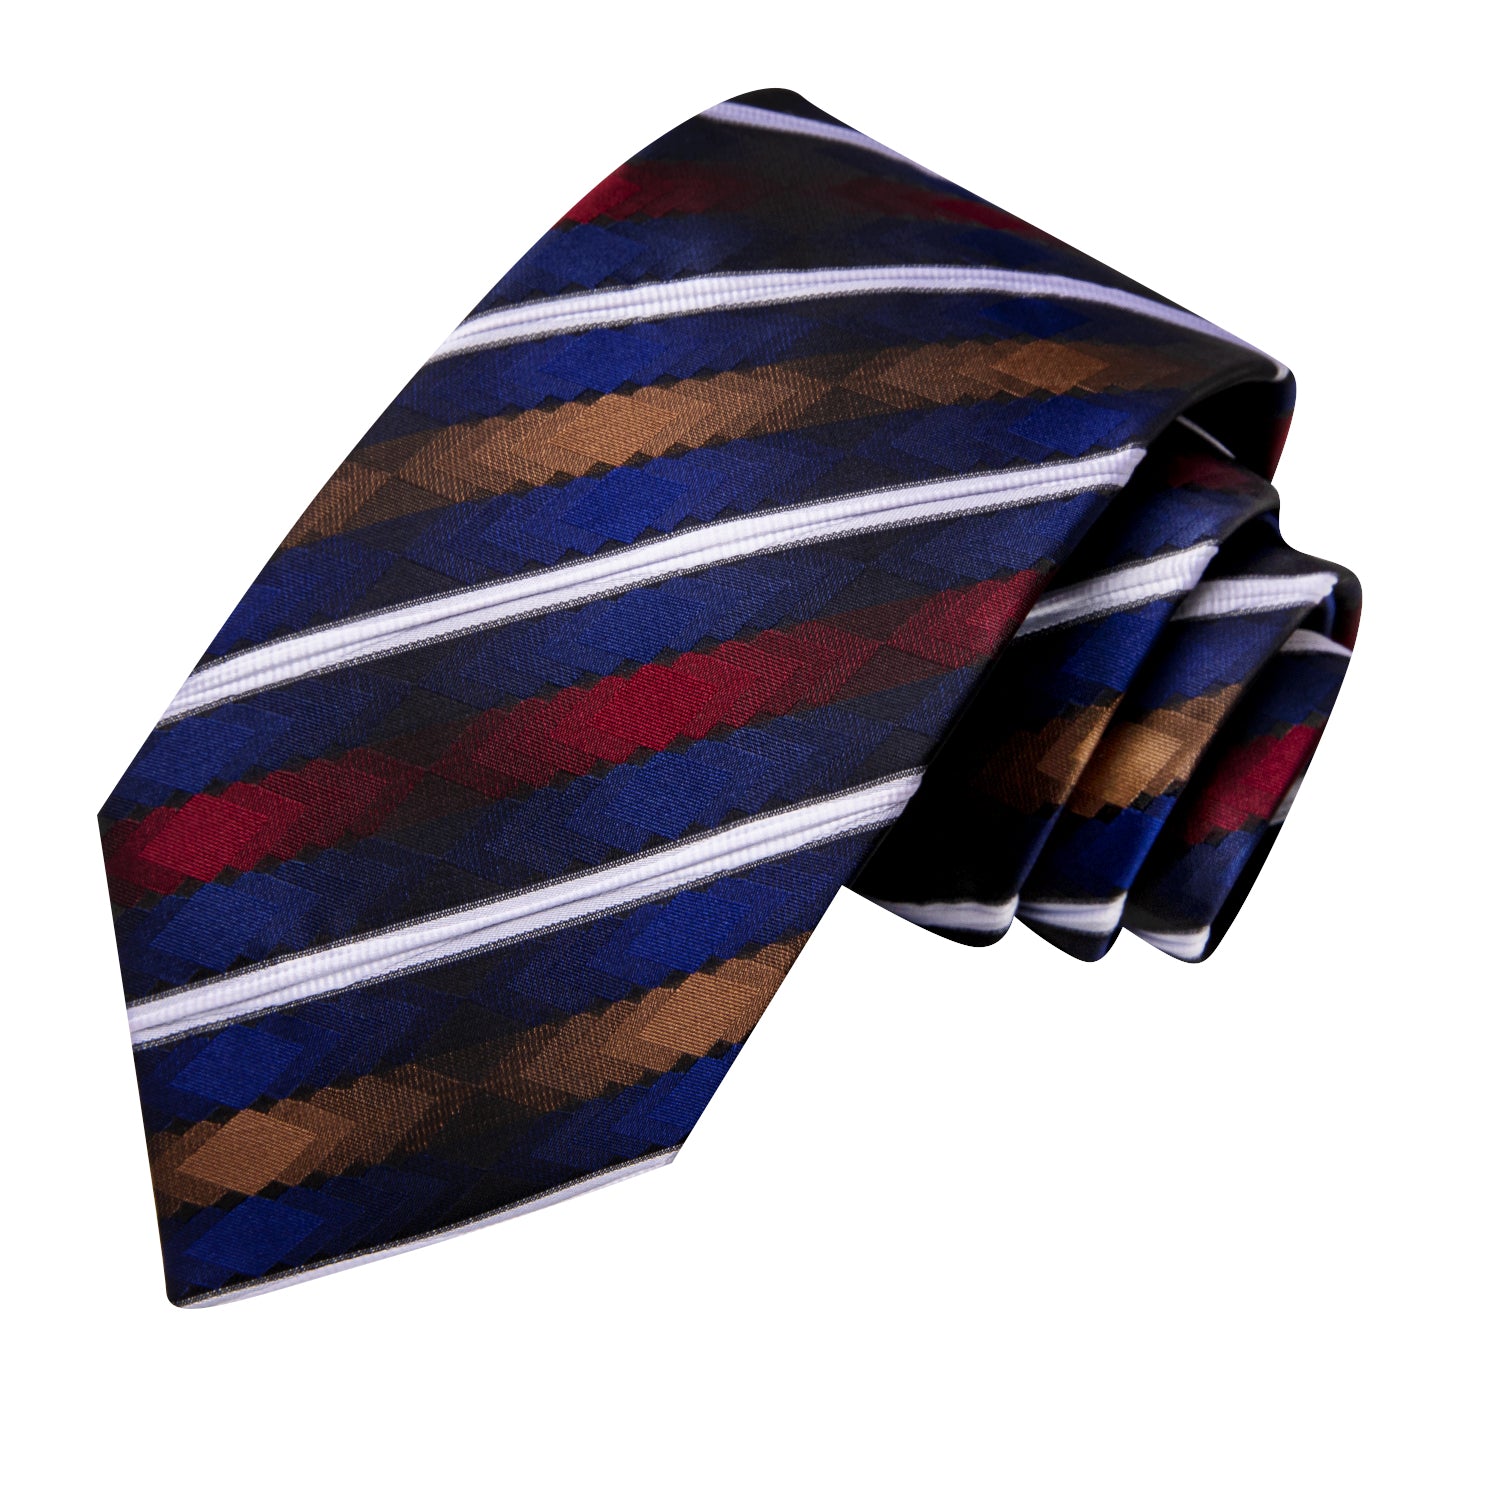 Hi-Tie White Blue Striped Novelty Men's Tie Pocket Square Cufflinks Set